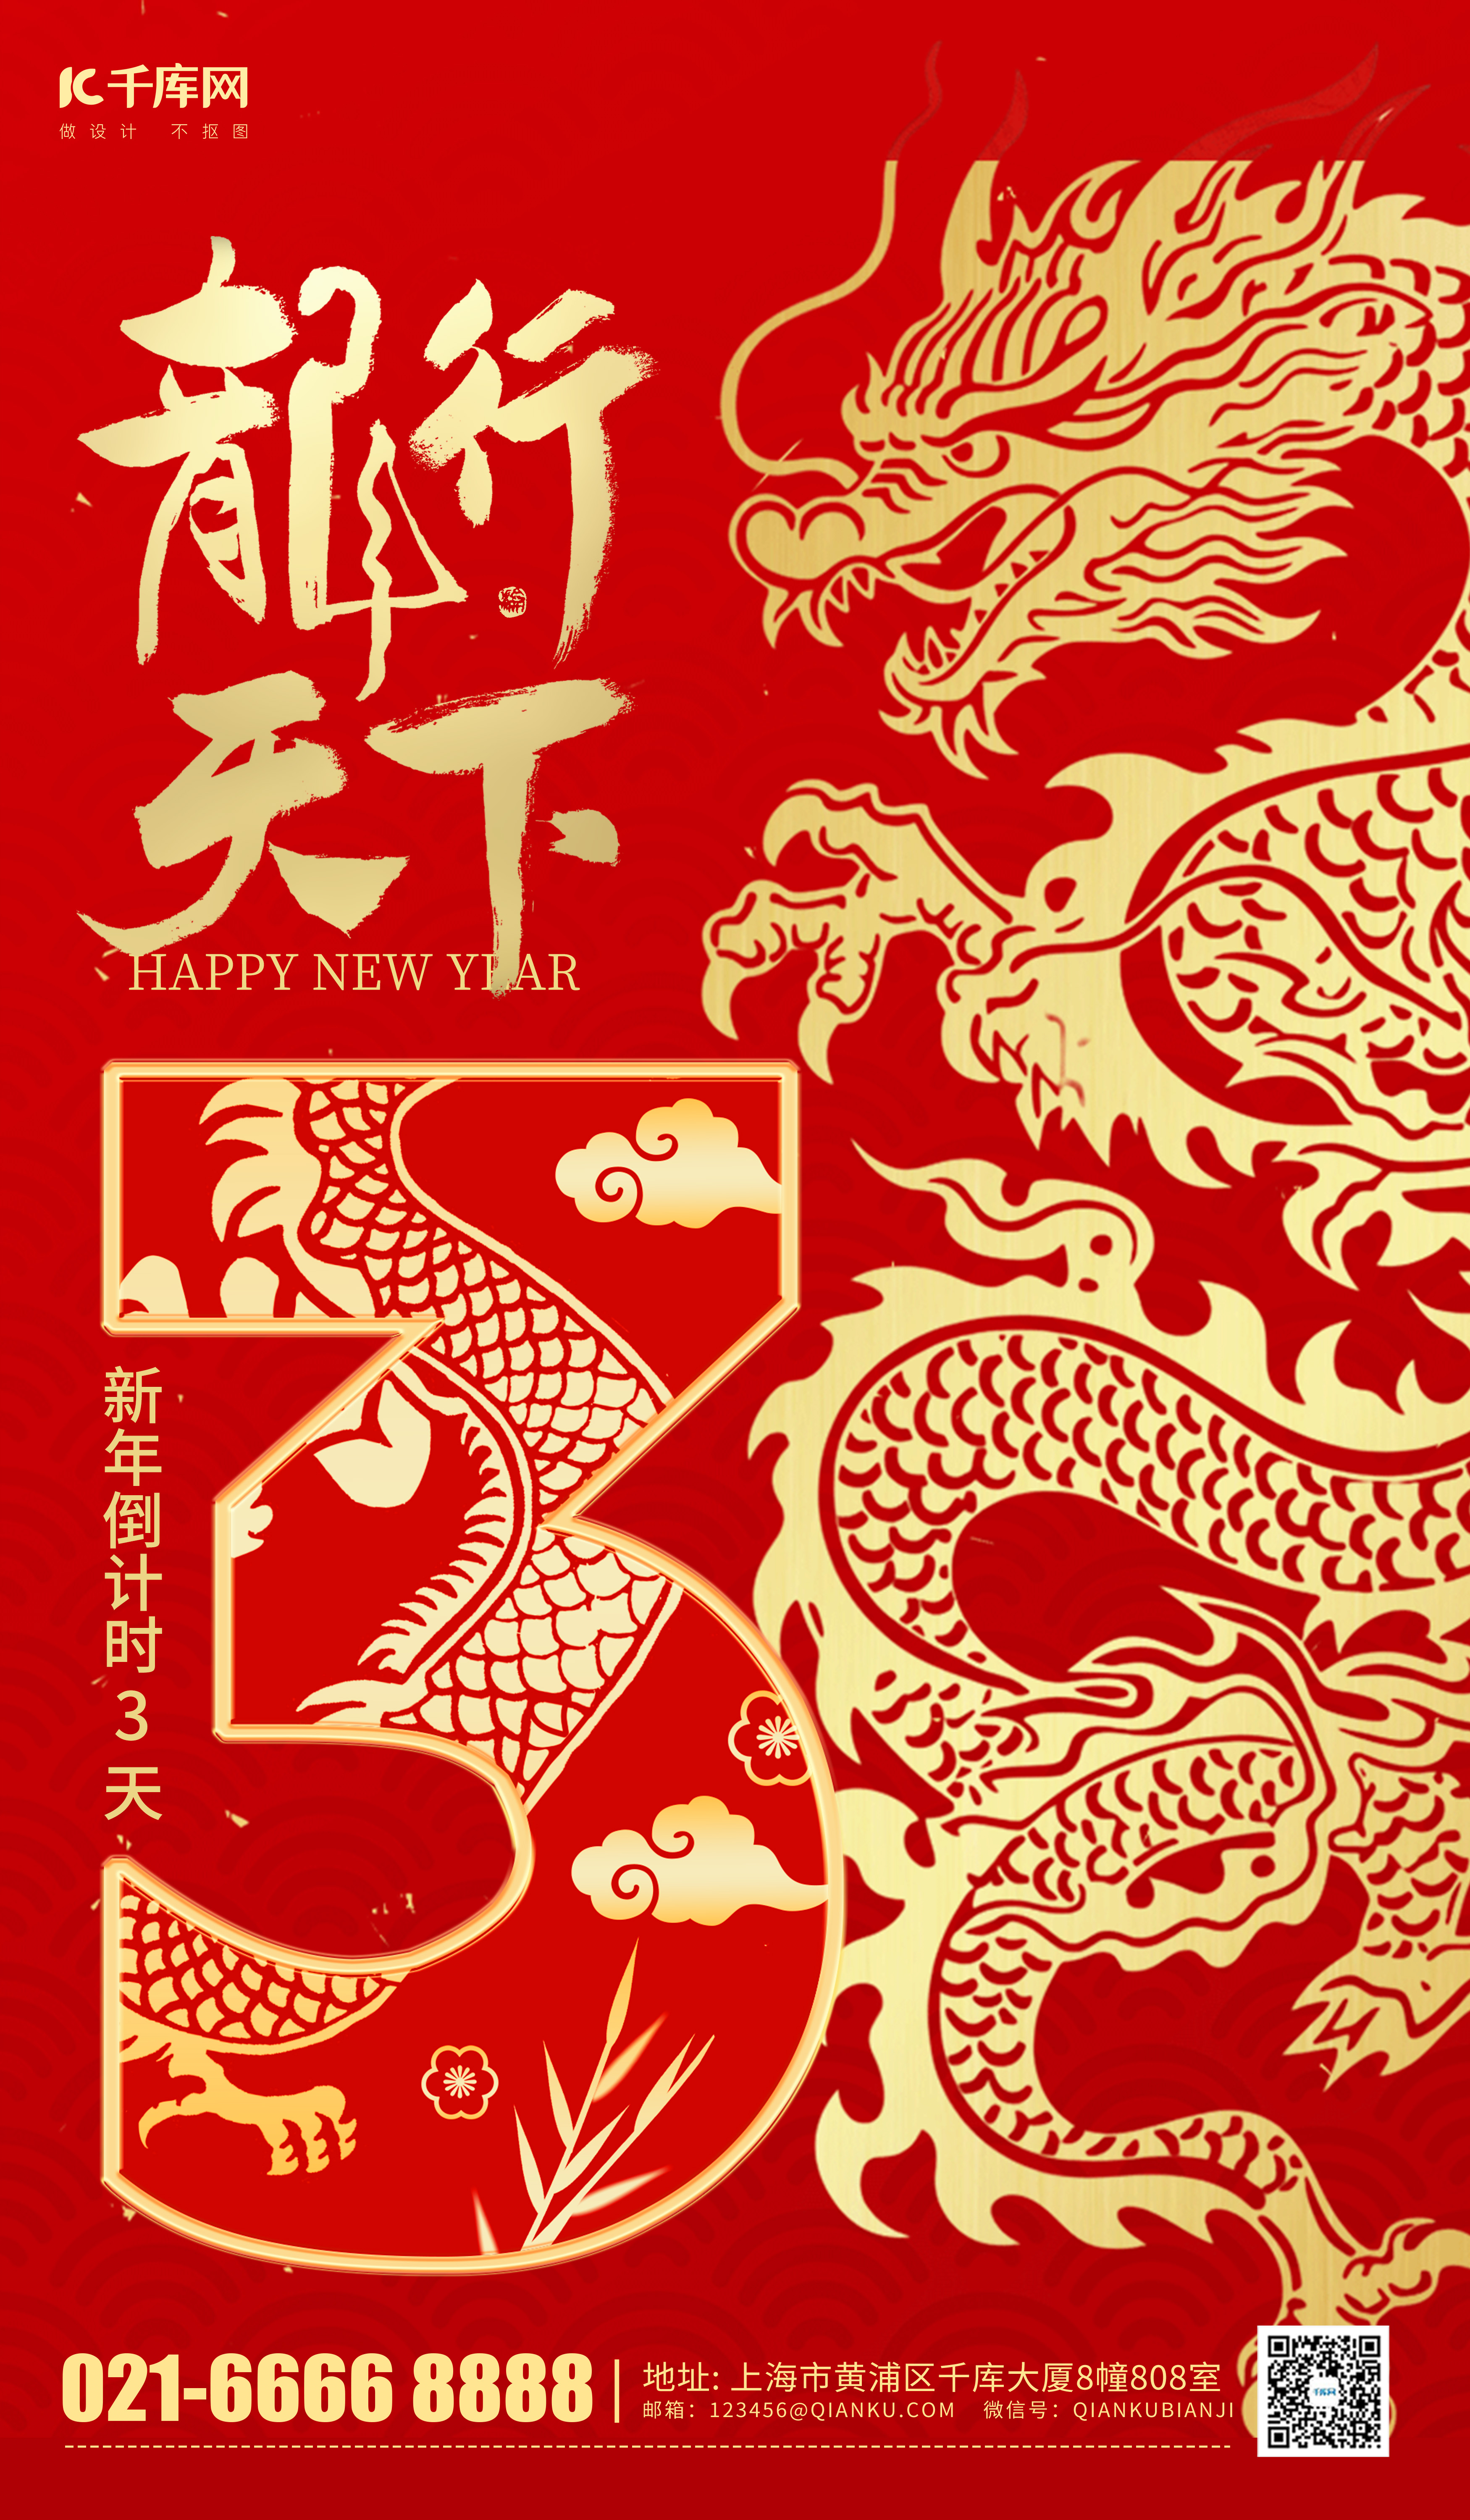 春节新年倒计时3天红色中国风海报图片